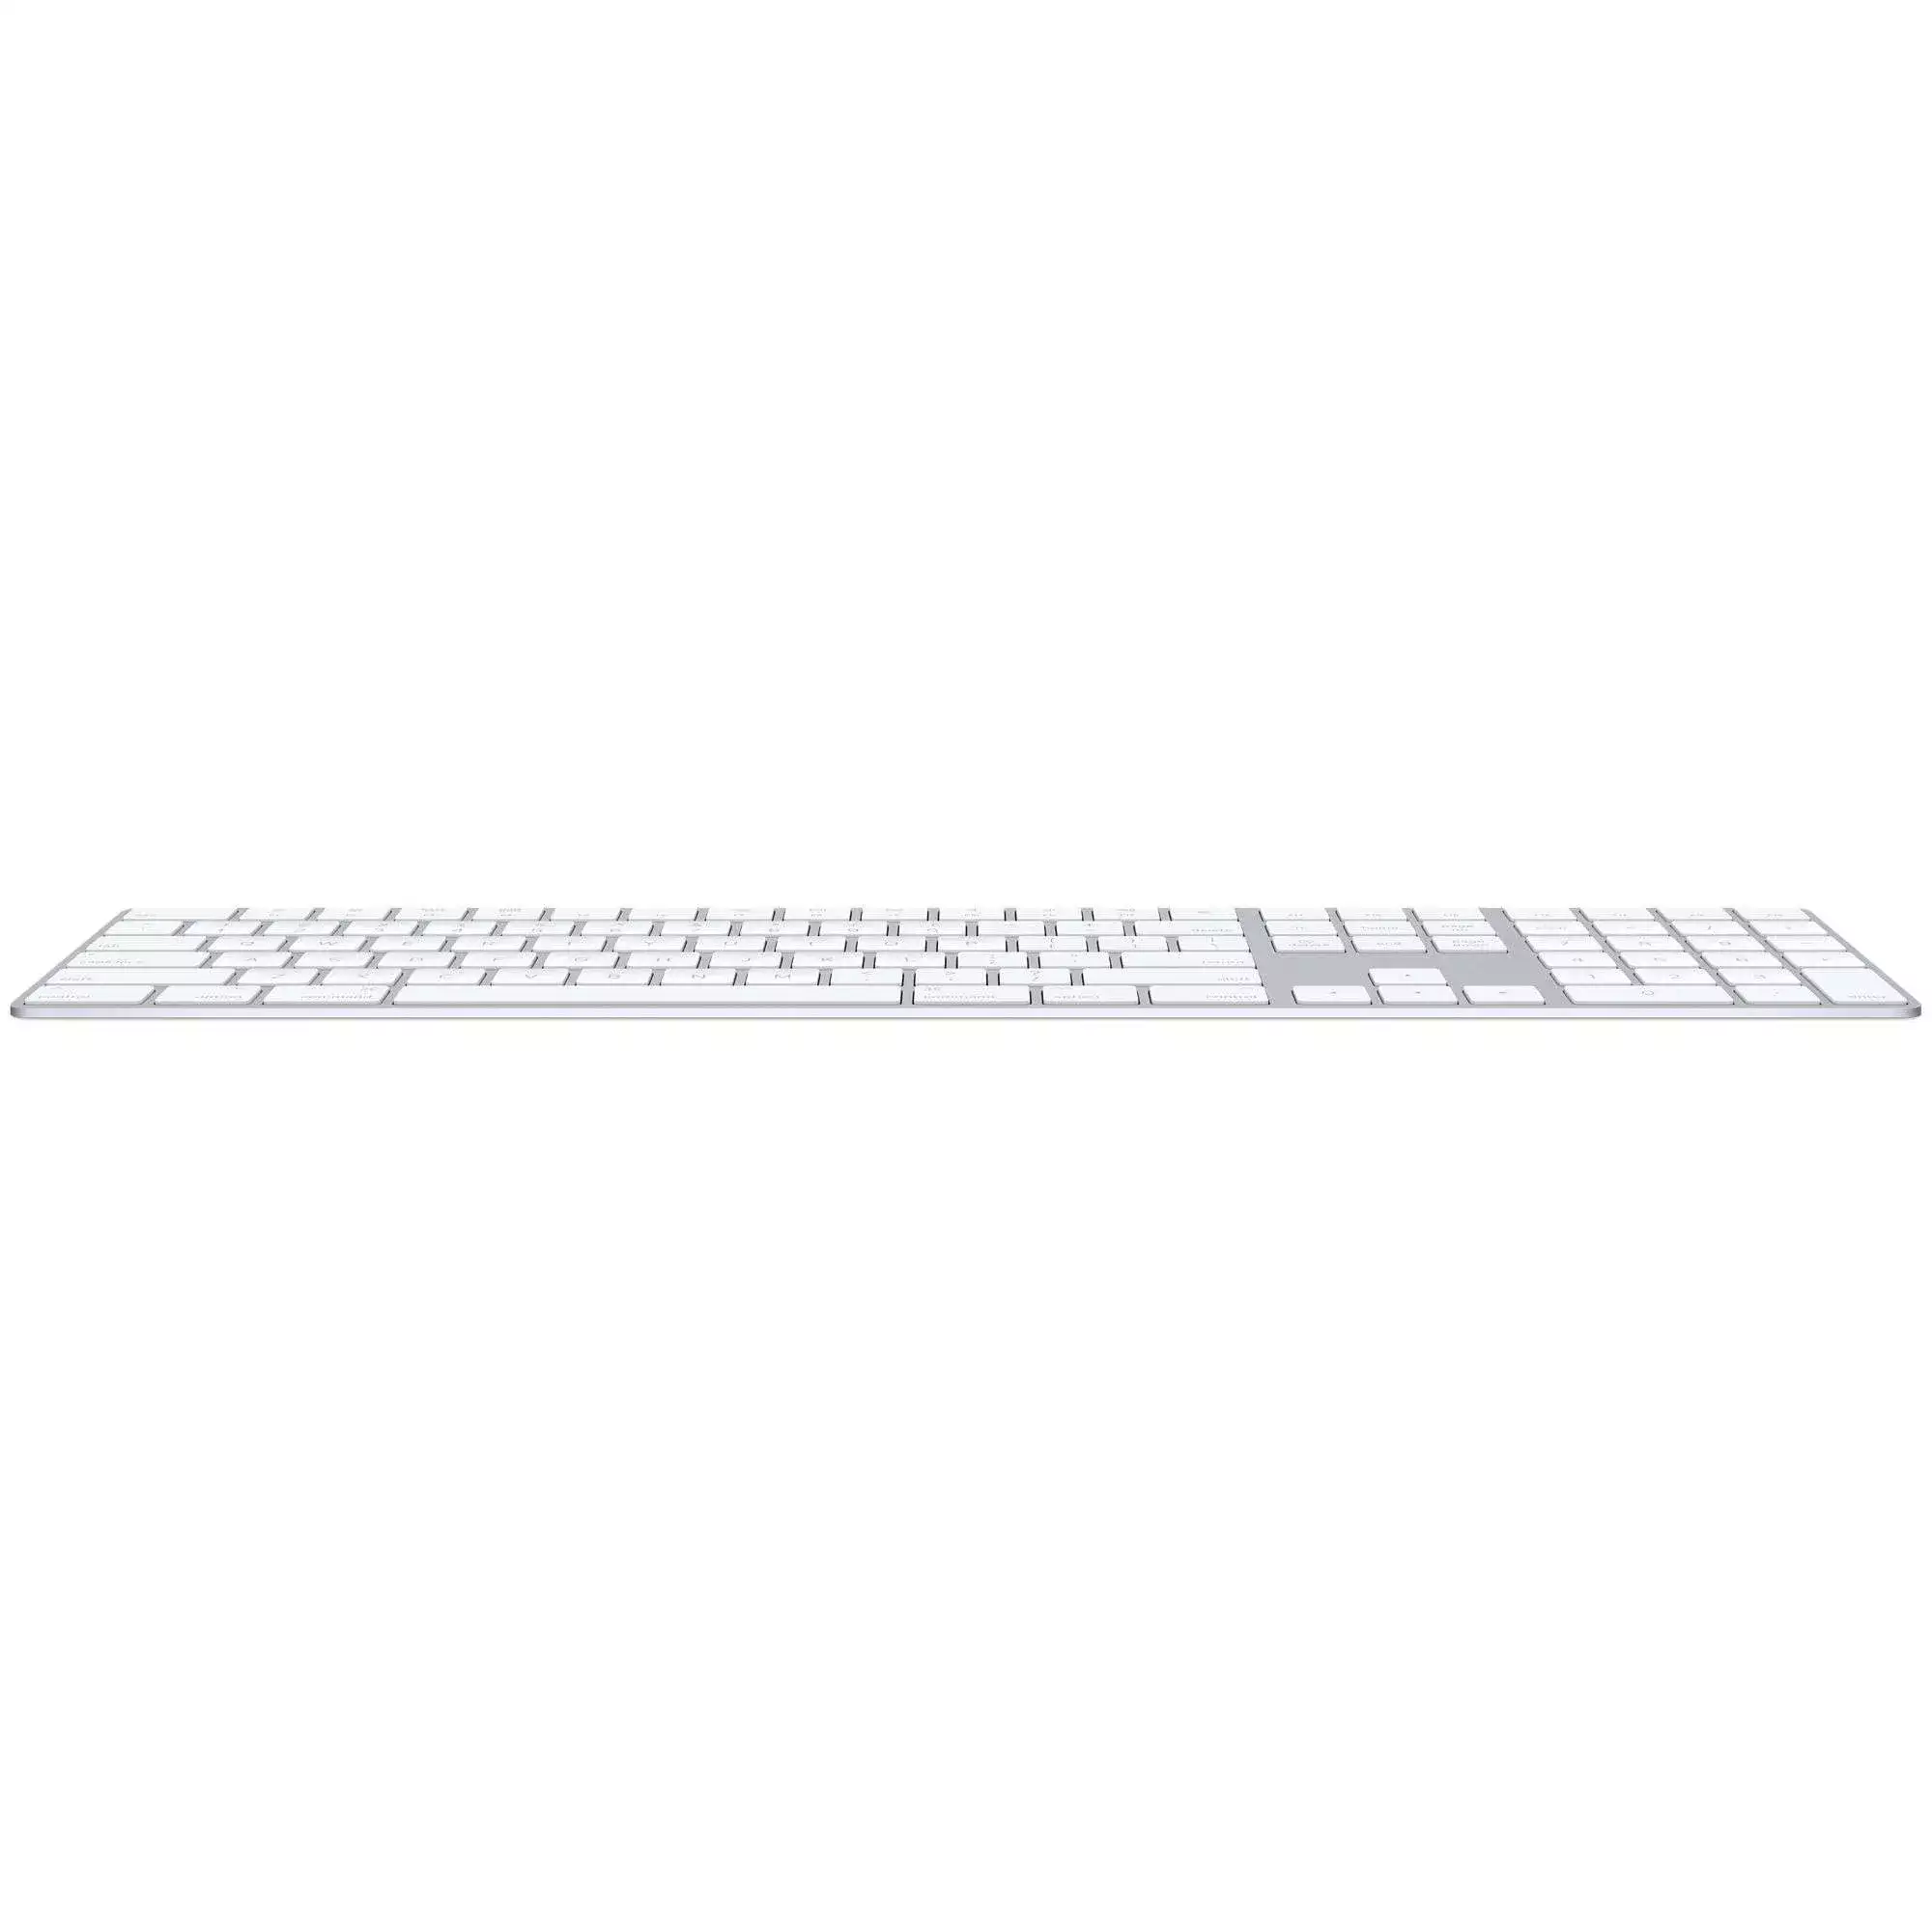 Magic Keyboard Numerik Alanlı İngilizce Q Klavye Gümüş MQ052TZ/A